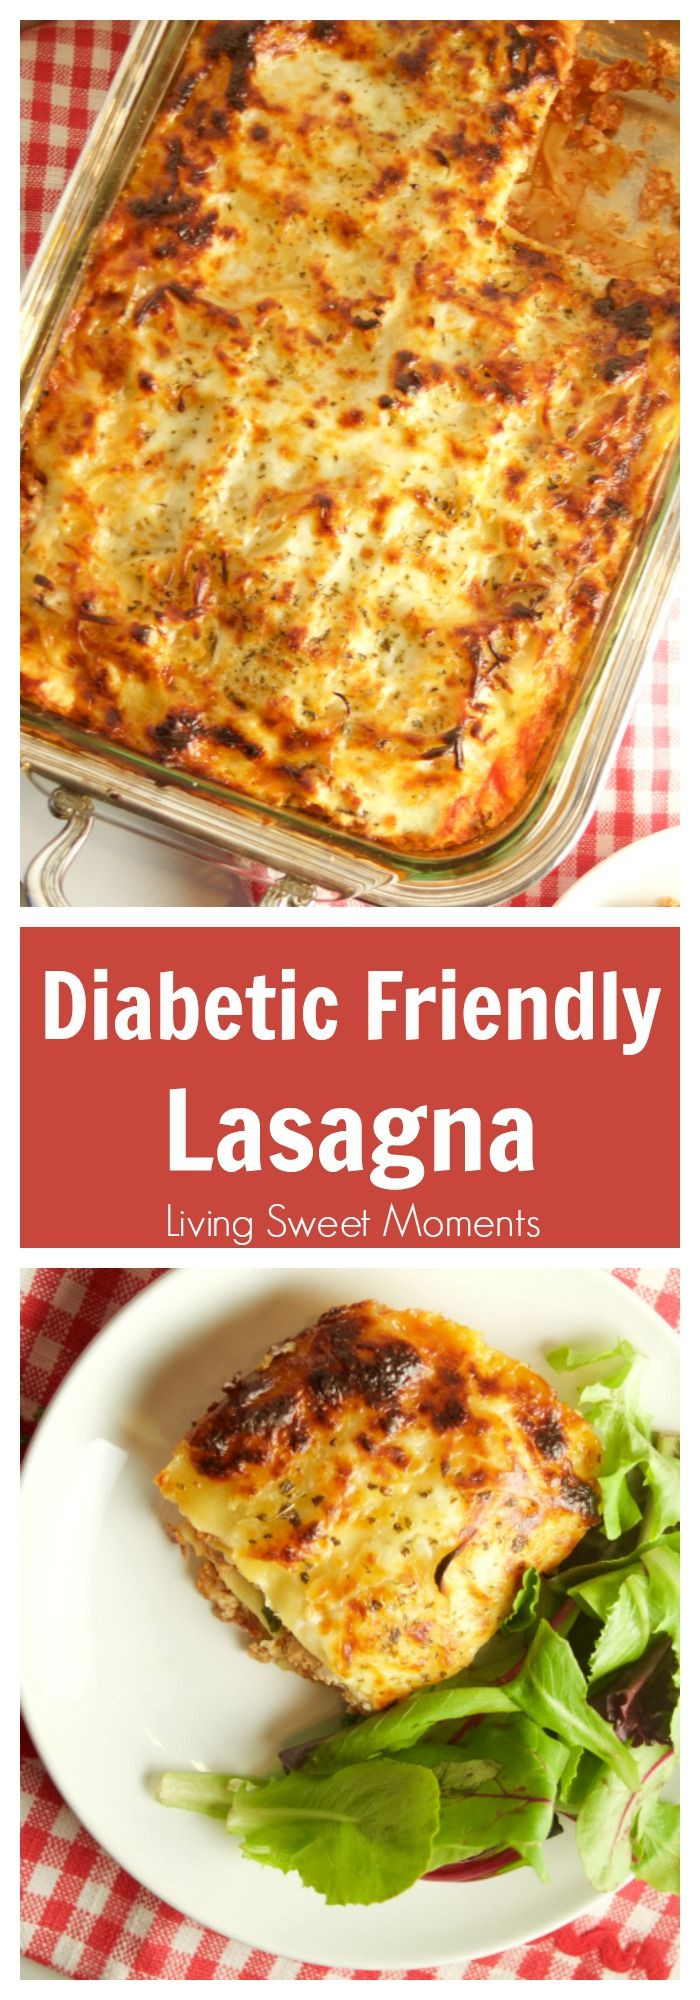 Easy Diabetic Breakfast Recipes
 100 Diabetic Dinner Recipes on Pinterest